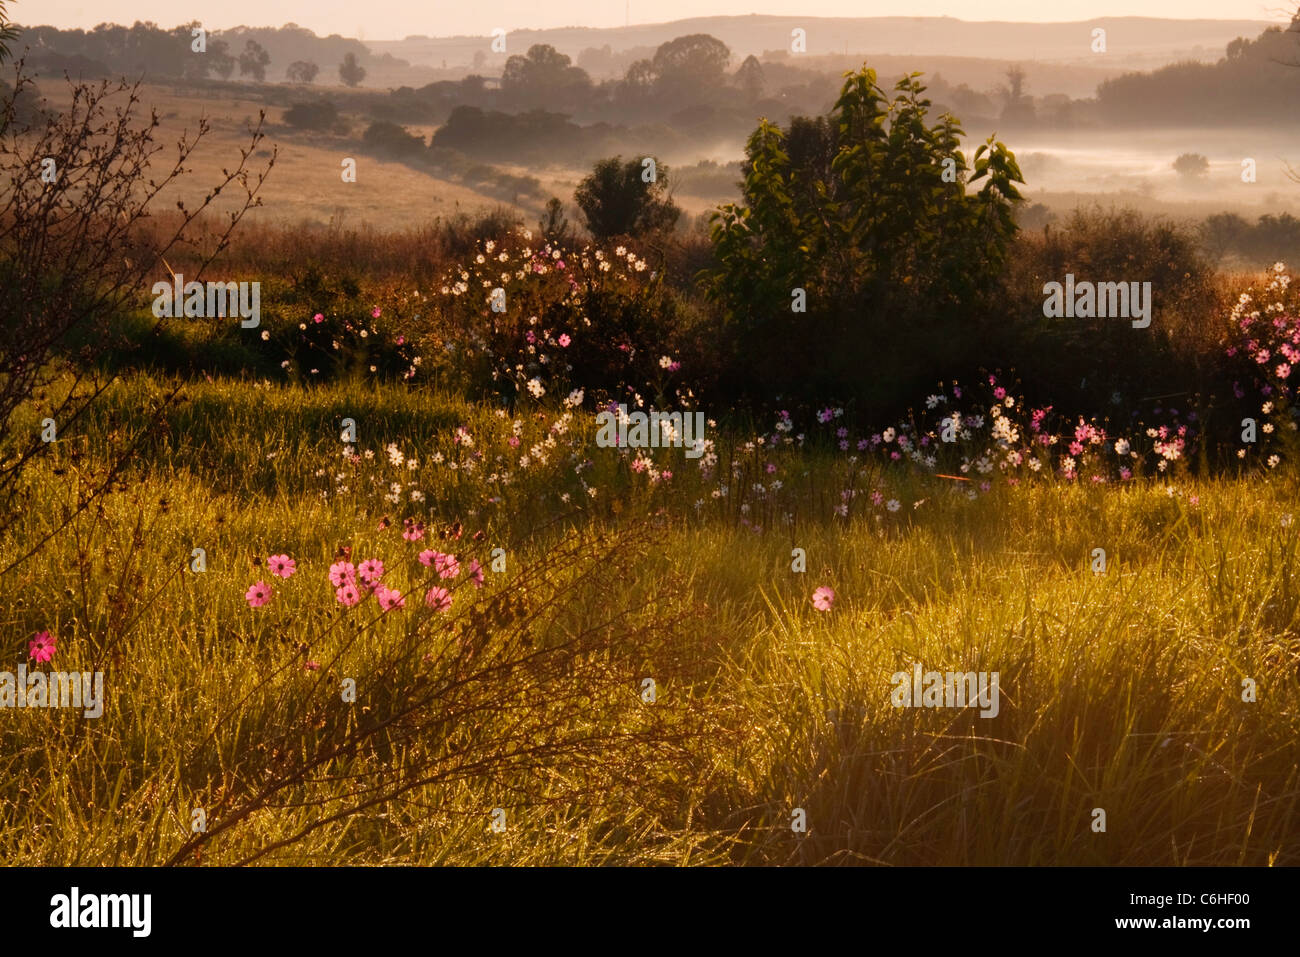 Ländliches Motiv mit einem Feld von Kosmos Blumen wachsen im Hinblick auf eine neblige Tal hinaus Stockfoto